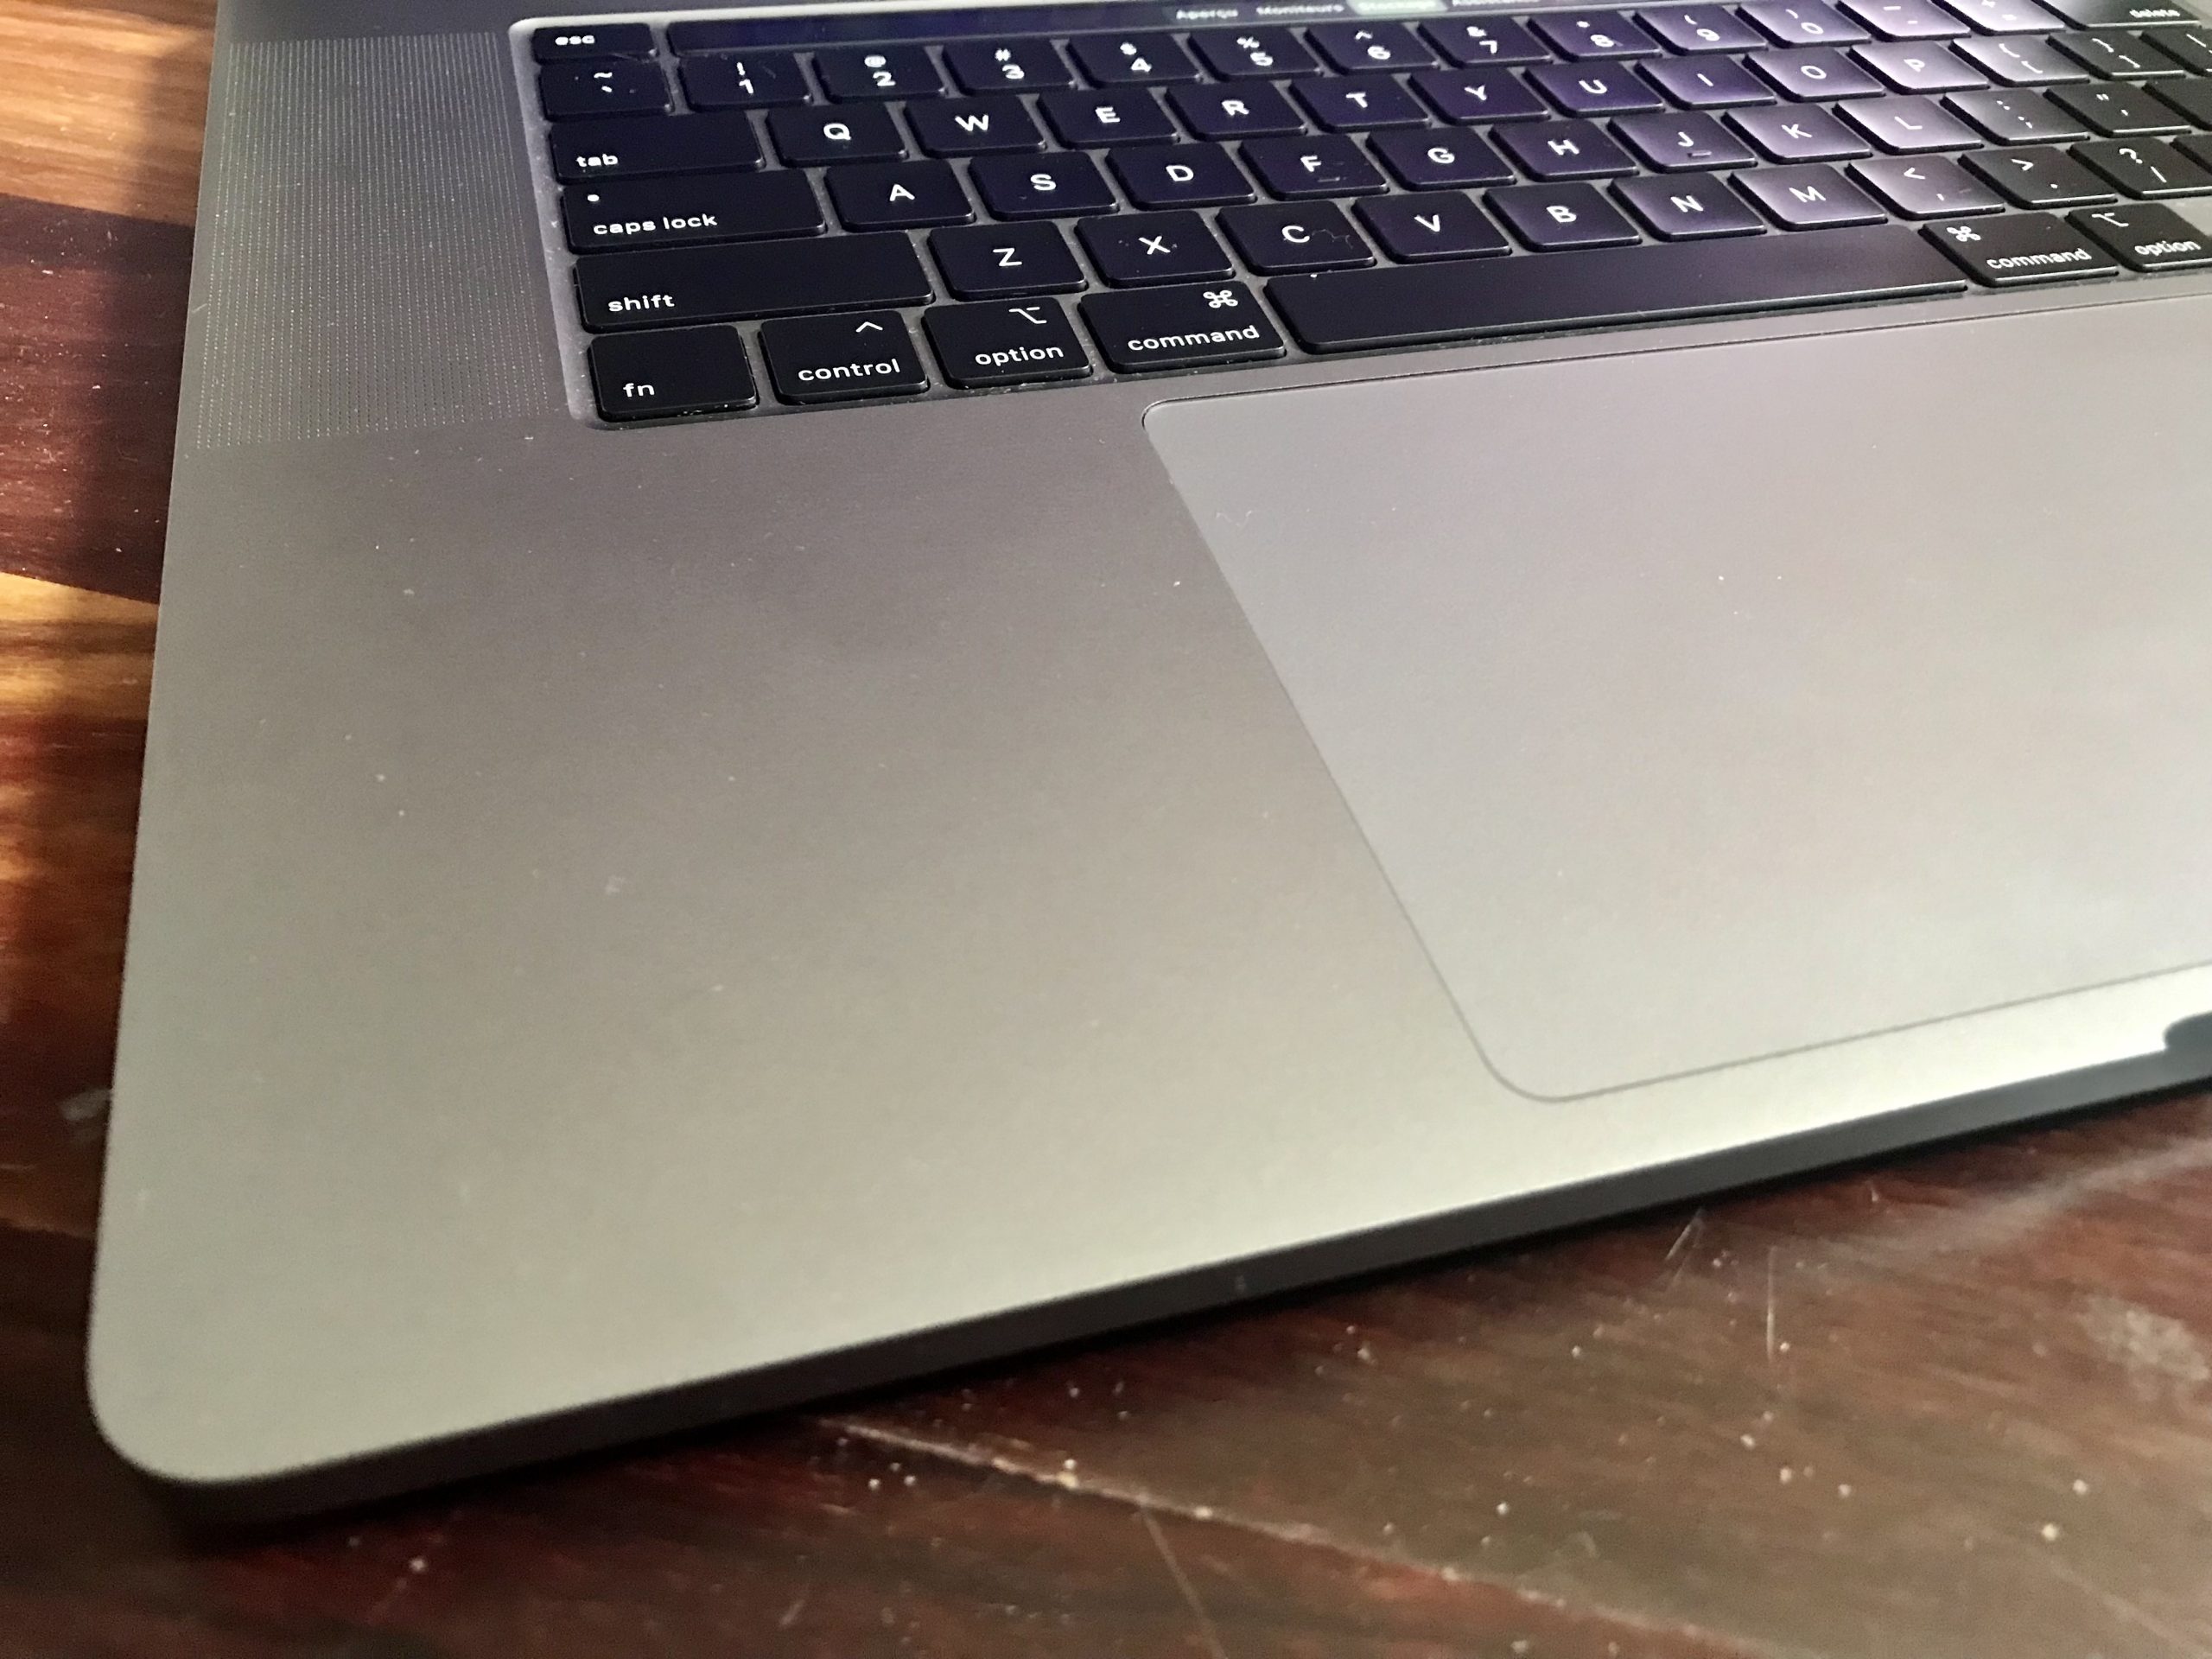 MacBook Pro 16 pouces 2019 touchbar